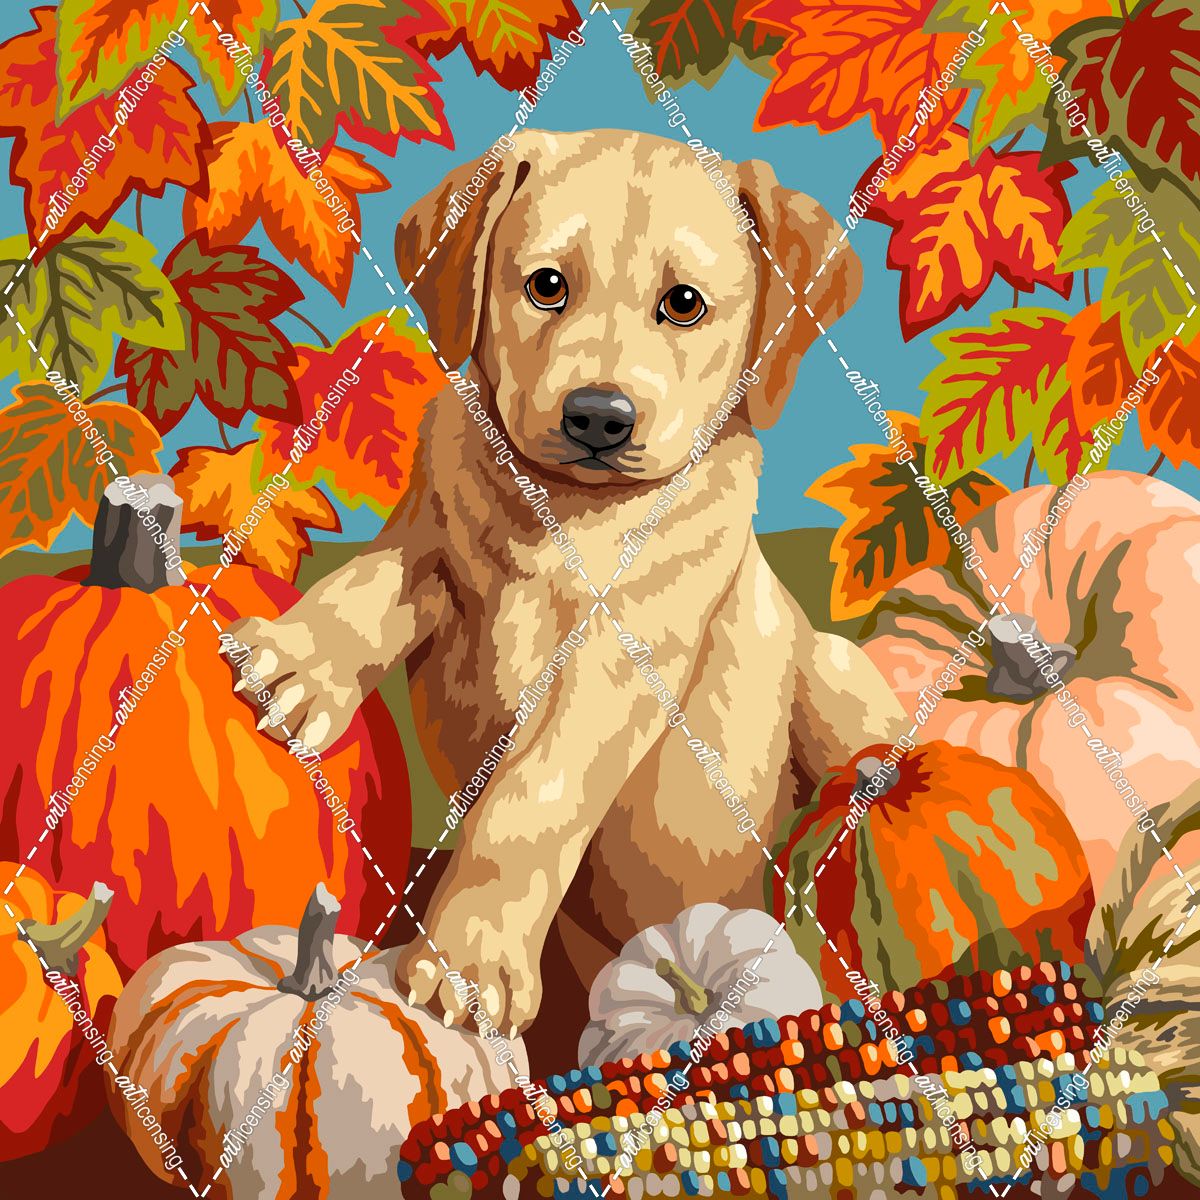 Autumn Harvest Puppy Retro